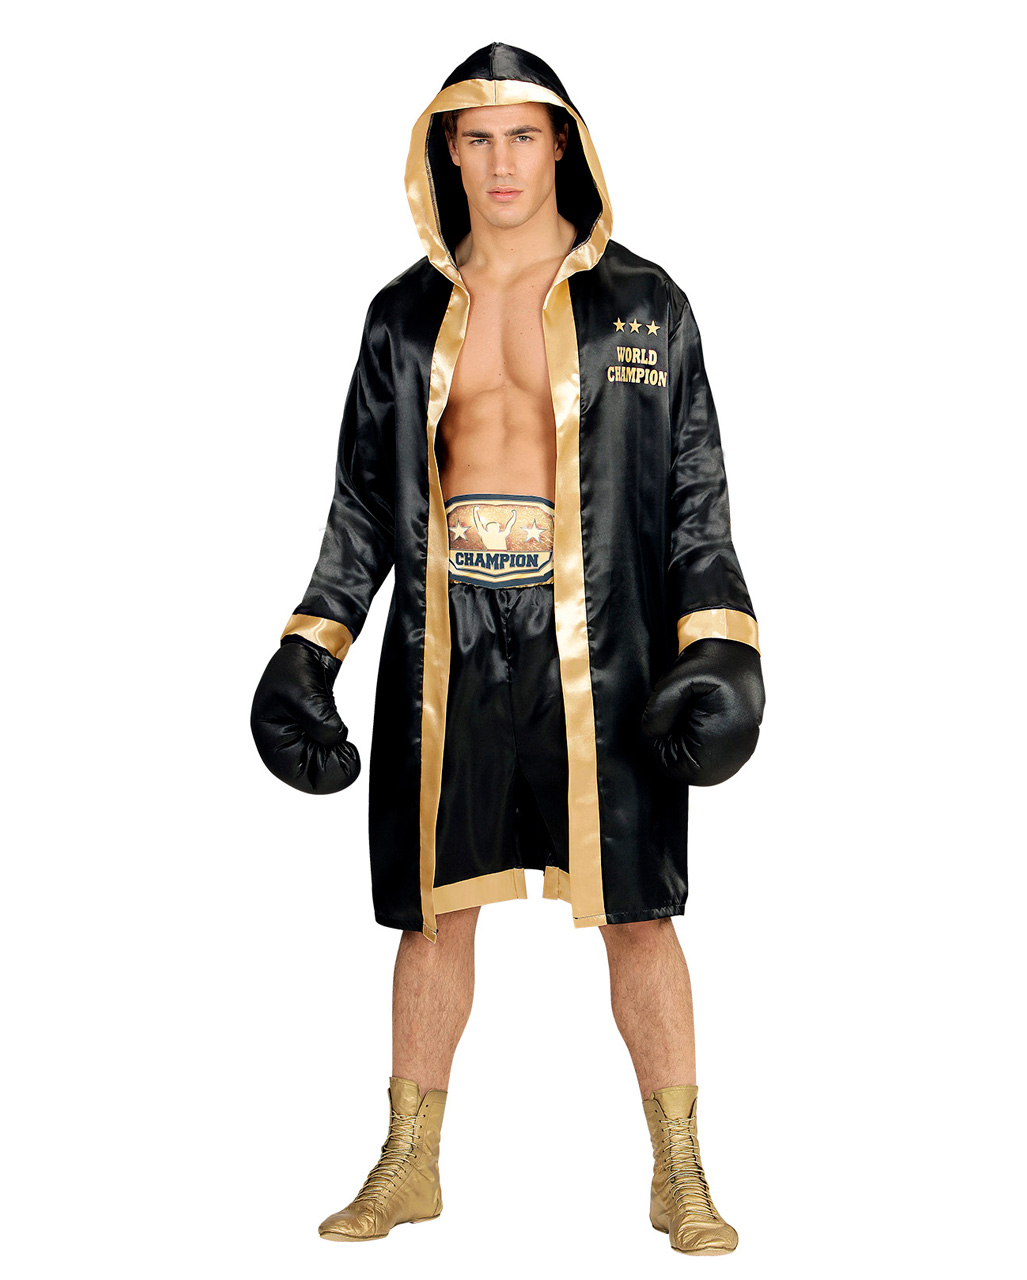 World Champion Boxer Kostüm für Karneval & Fasching M/L